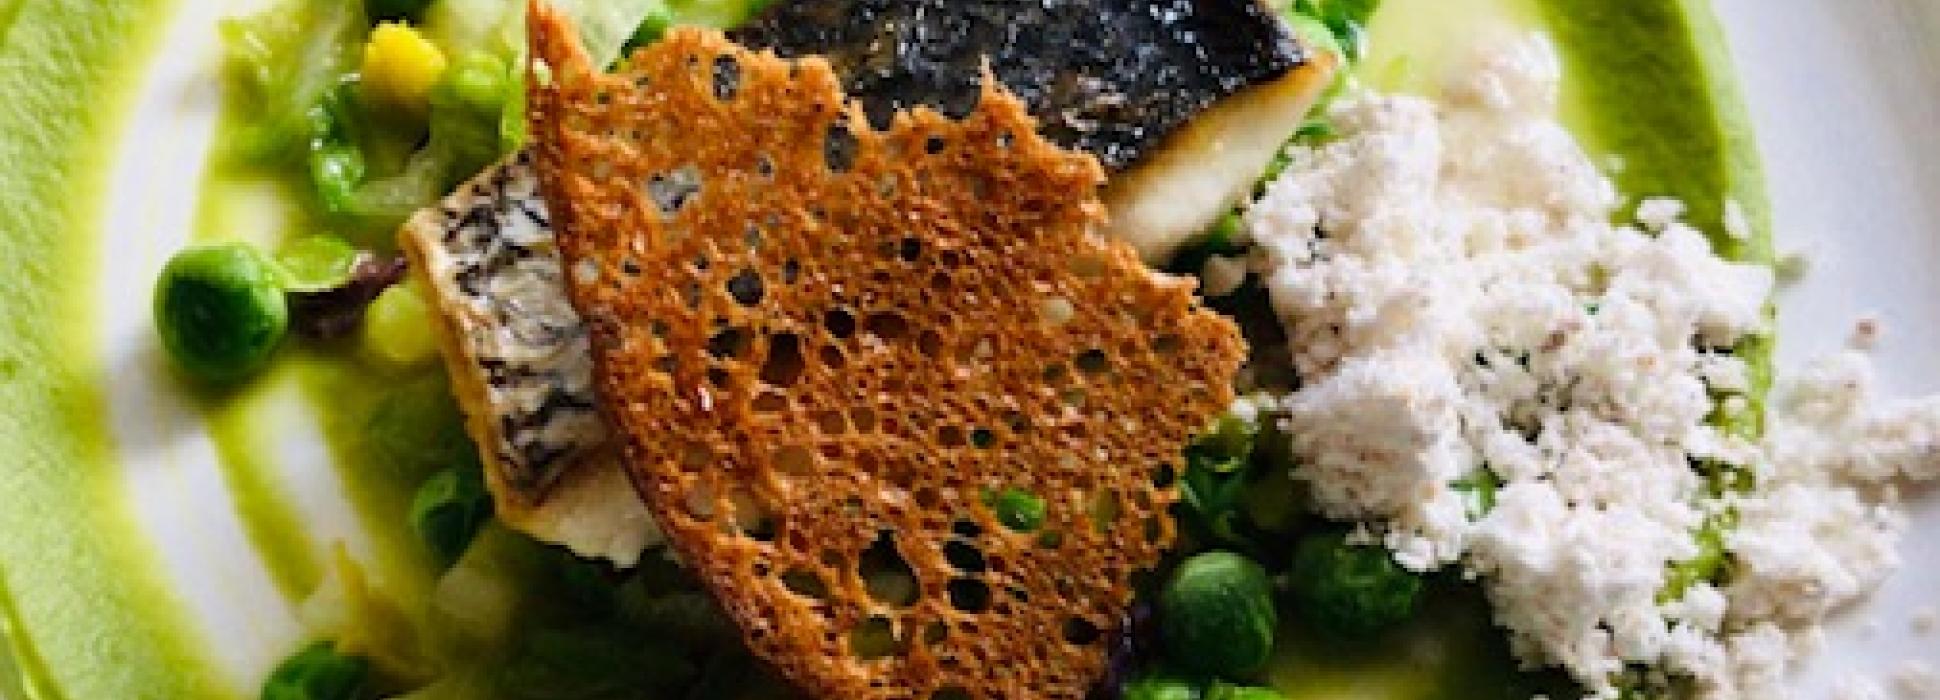 Cuatro restaurantes gastronómicos normandos son galardonados por la Guía Michelin